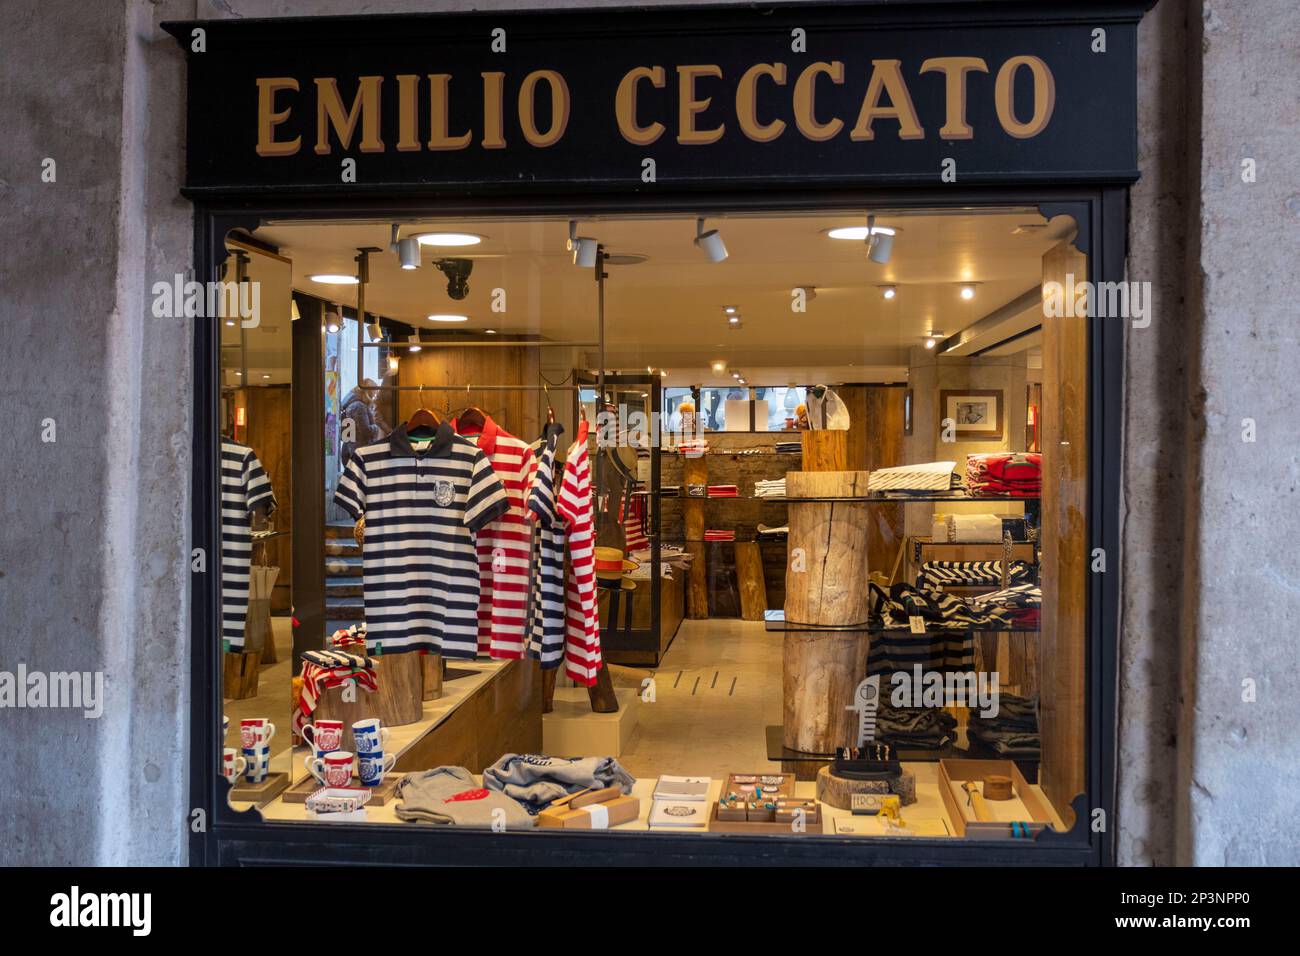 Gondolier uniforms on display in the Emilio Ceccato shop window, Venice, Italy Stock Photo